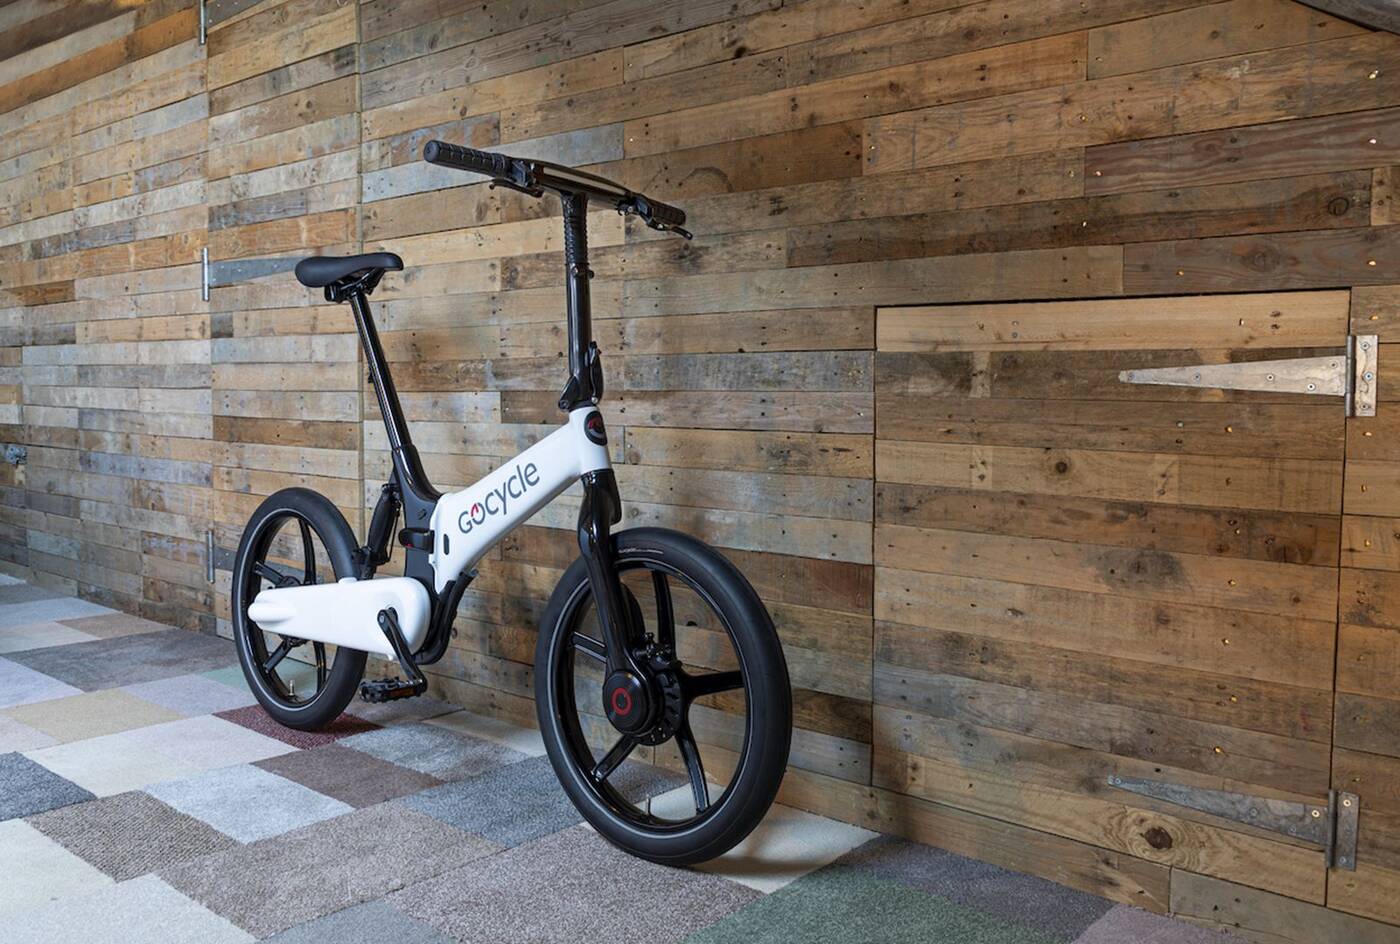 Nowe składane elektryczne rowery G4, składane elektryczne rowery G4 Gocycle, elektryczne rowery G4 Gocycle, rowery G4 Gocycle